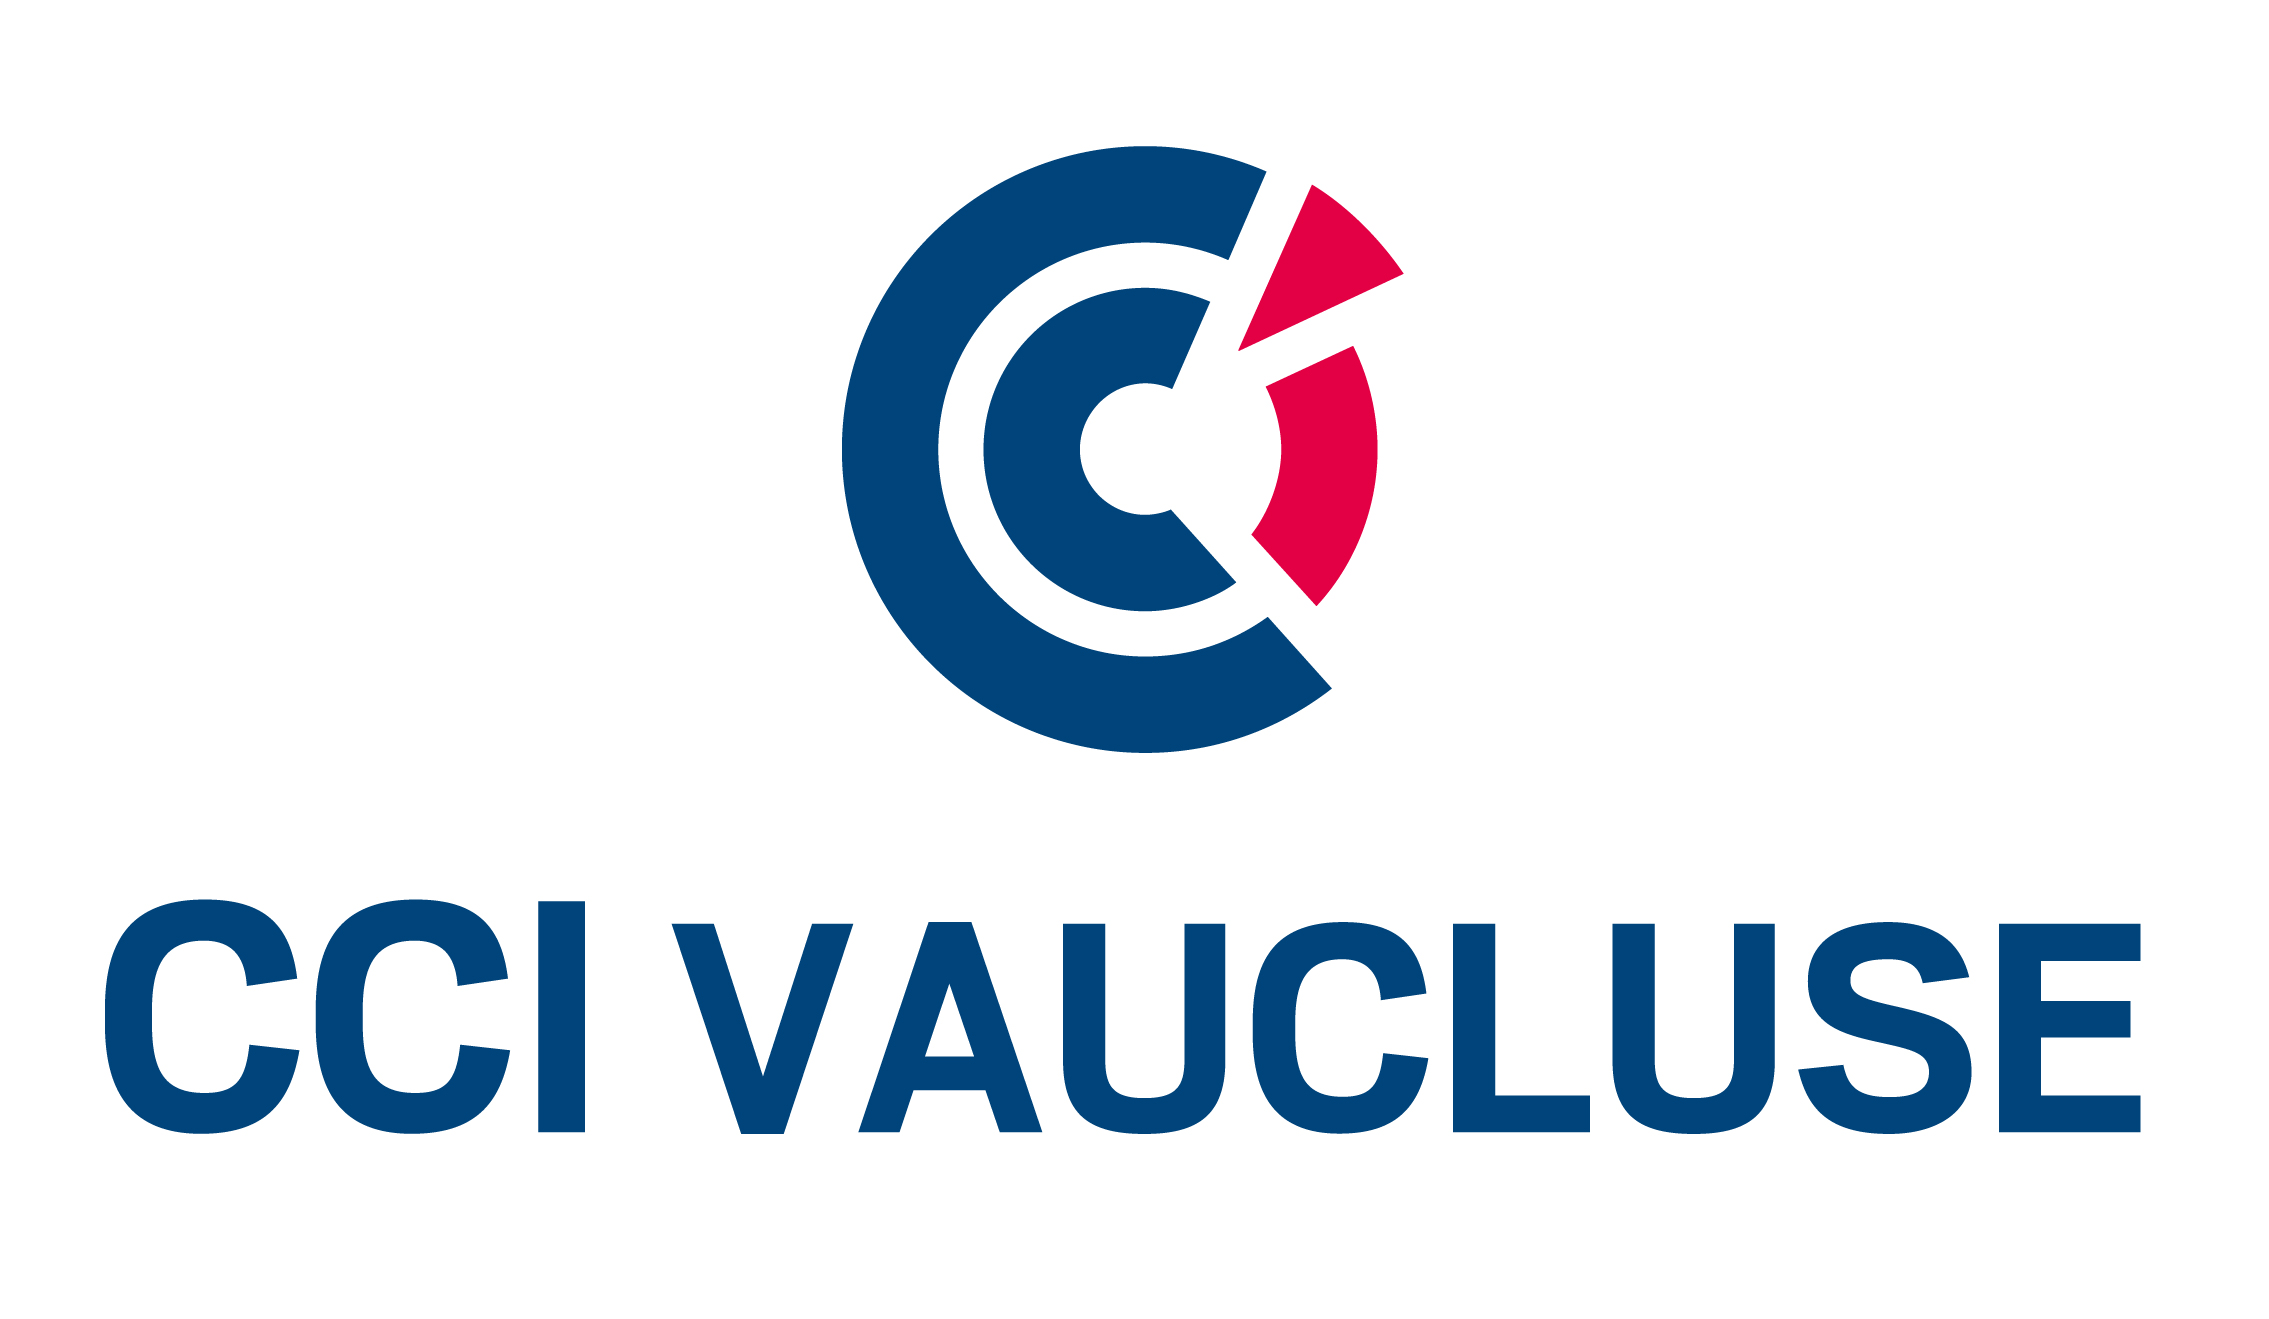 CCI Vaucluse logo